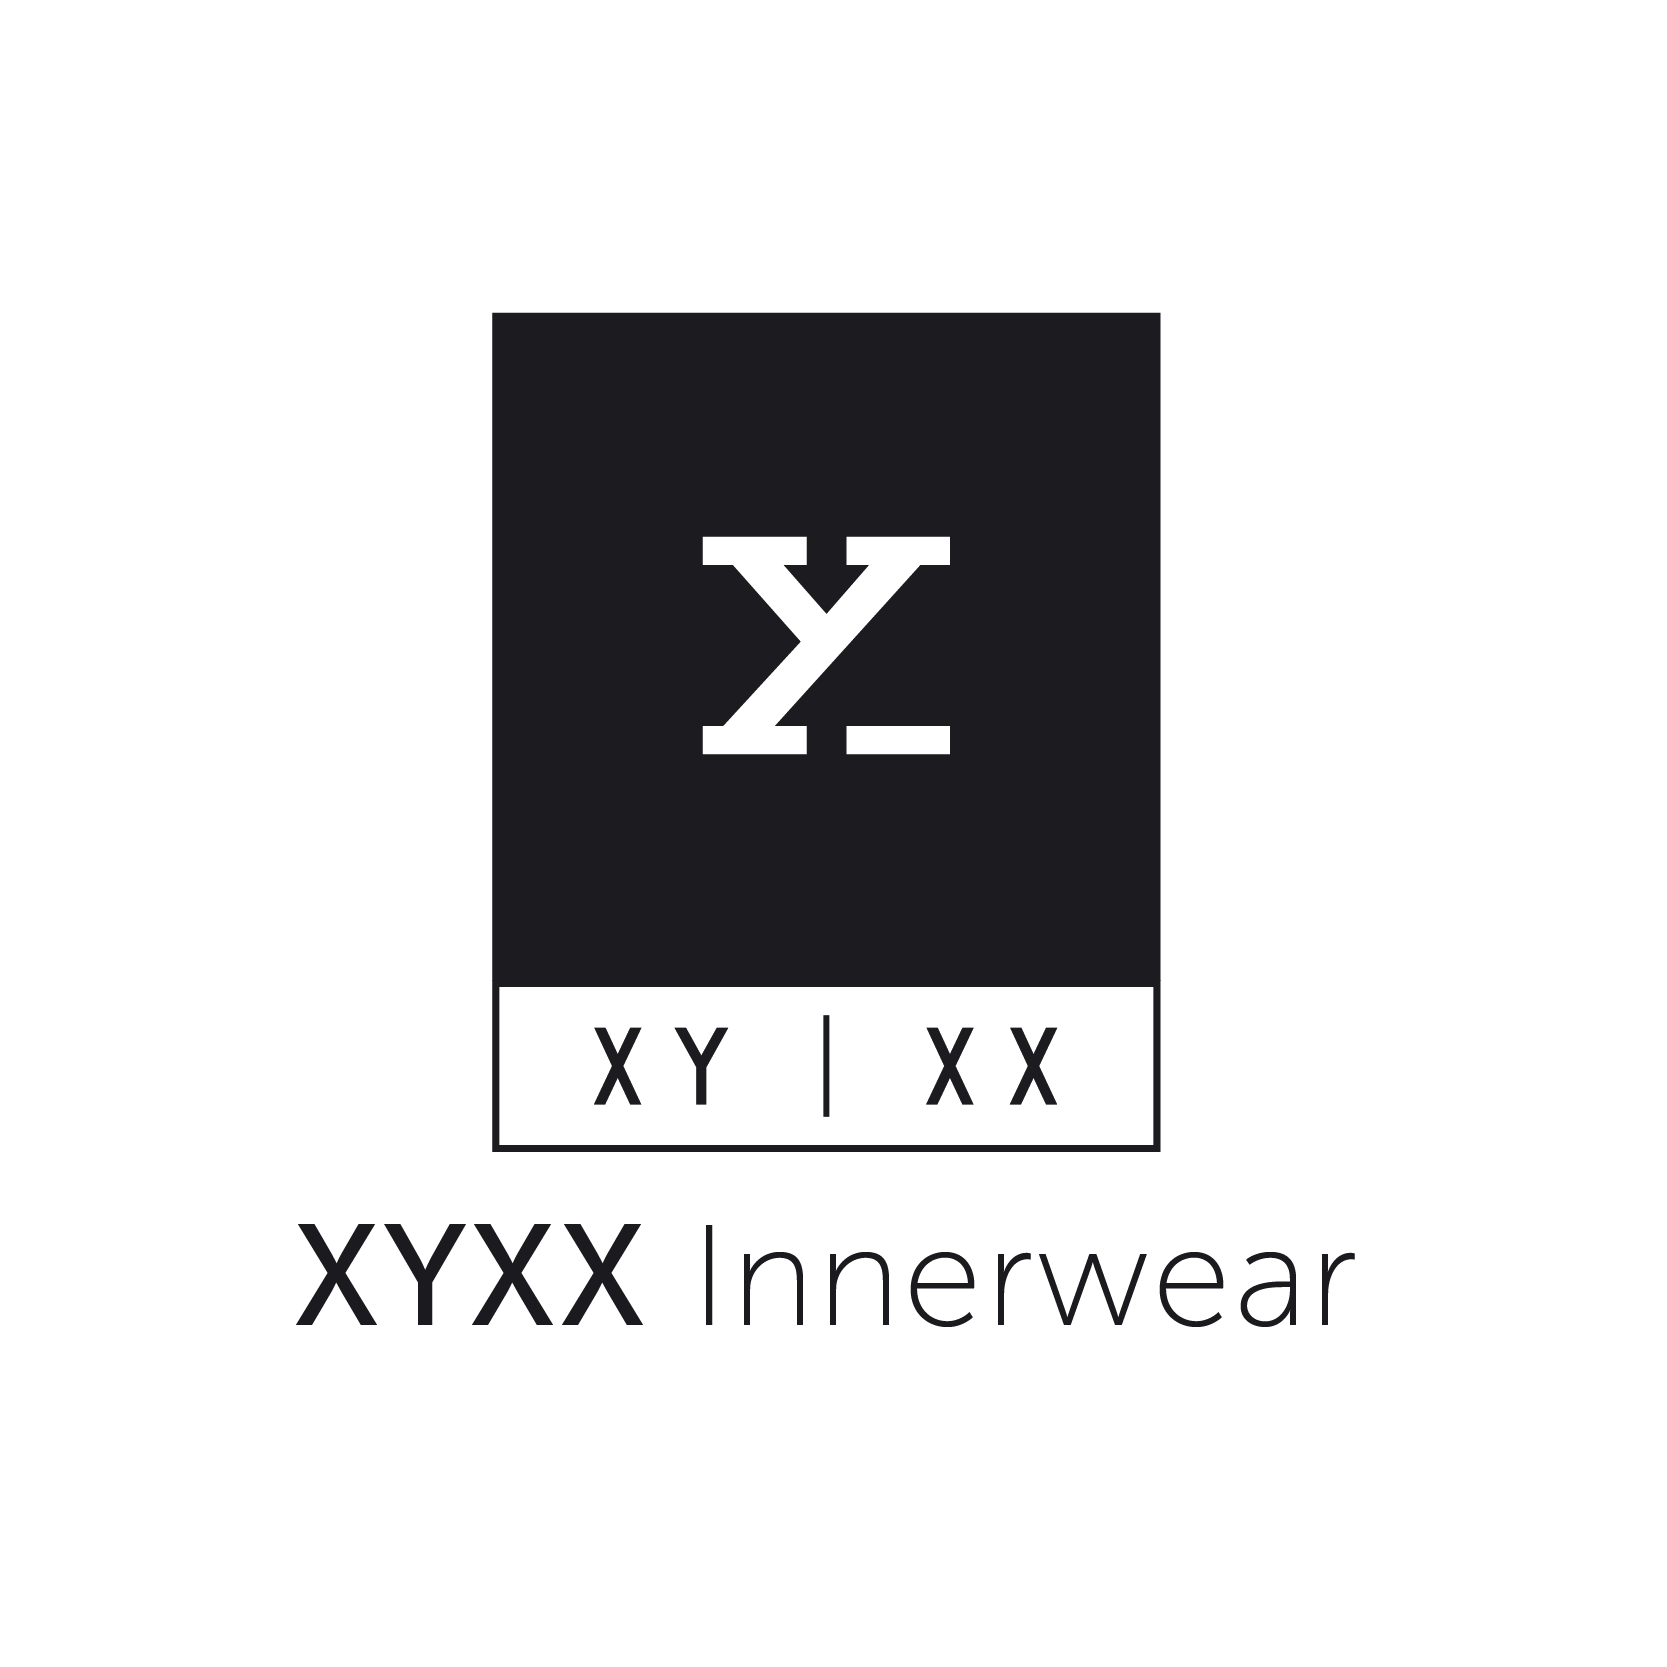 Xyxx Crew